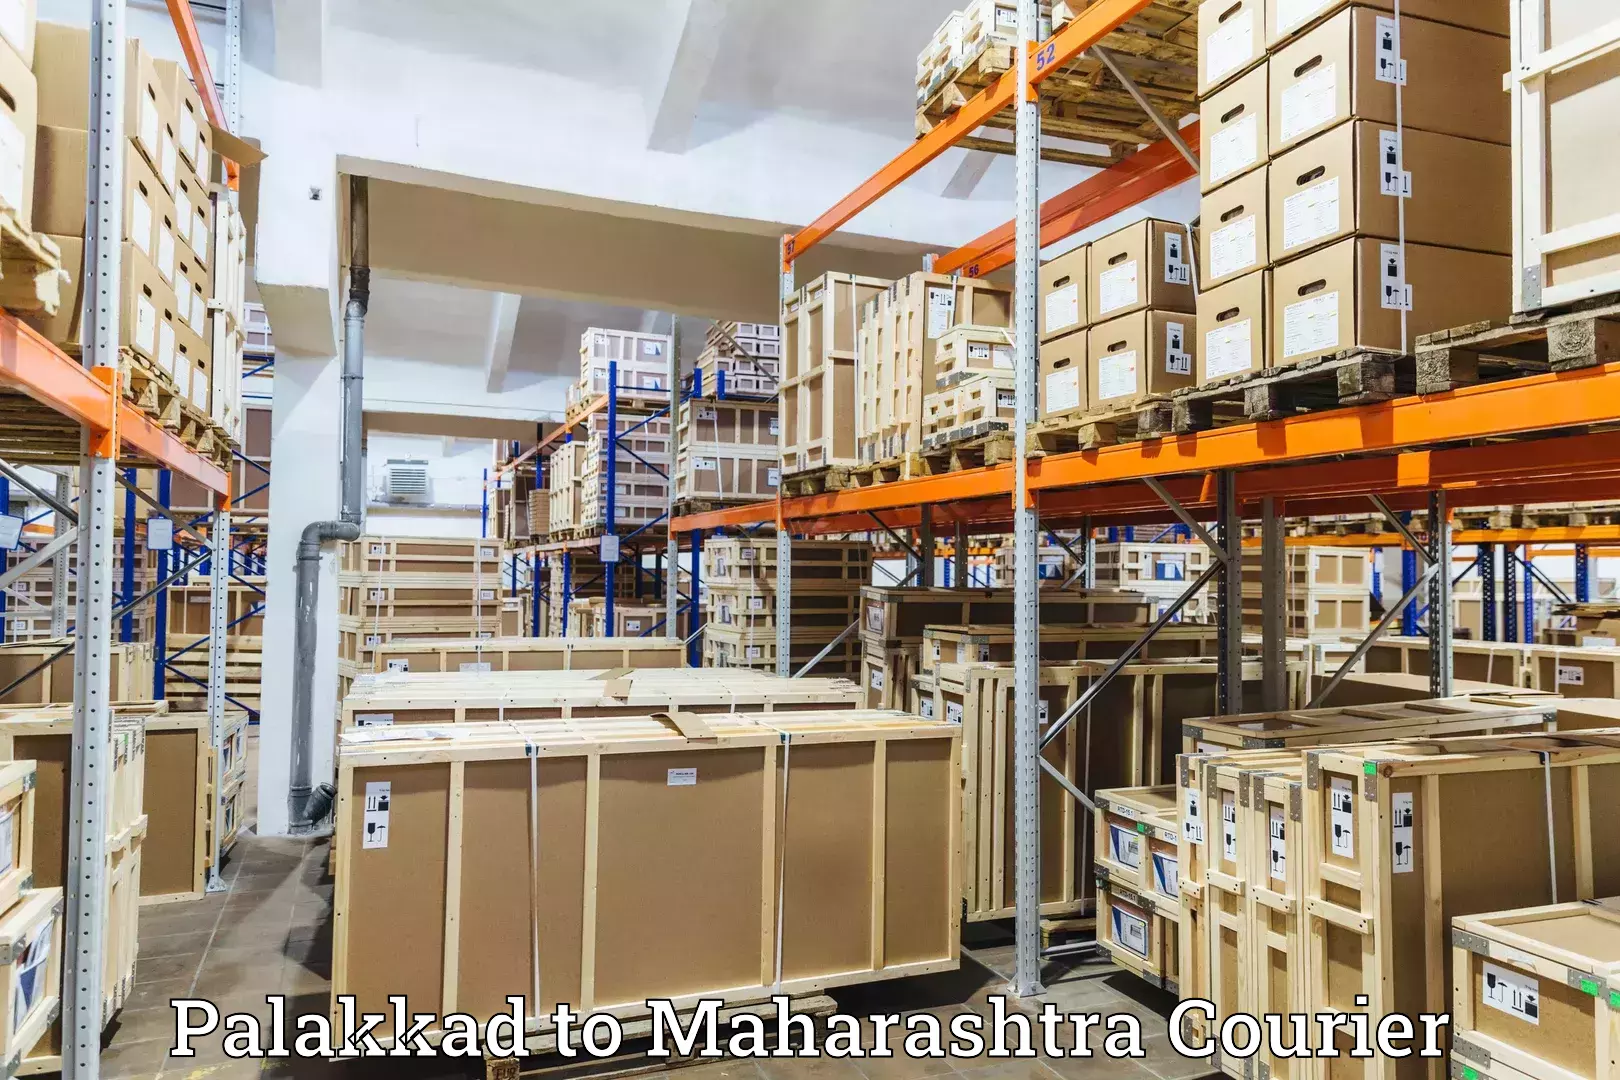 Corporate courier solutions Palakkad to Navi Mumbai